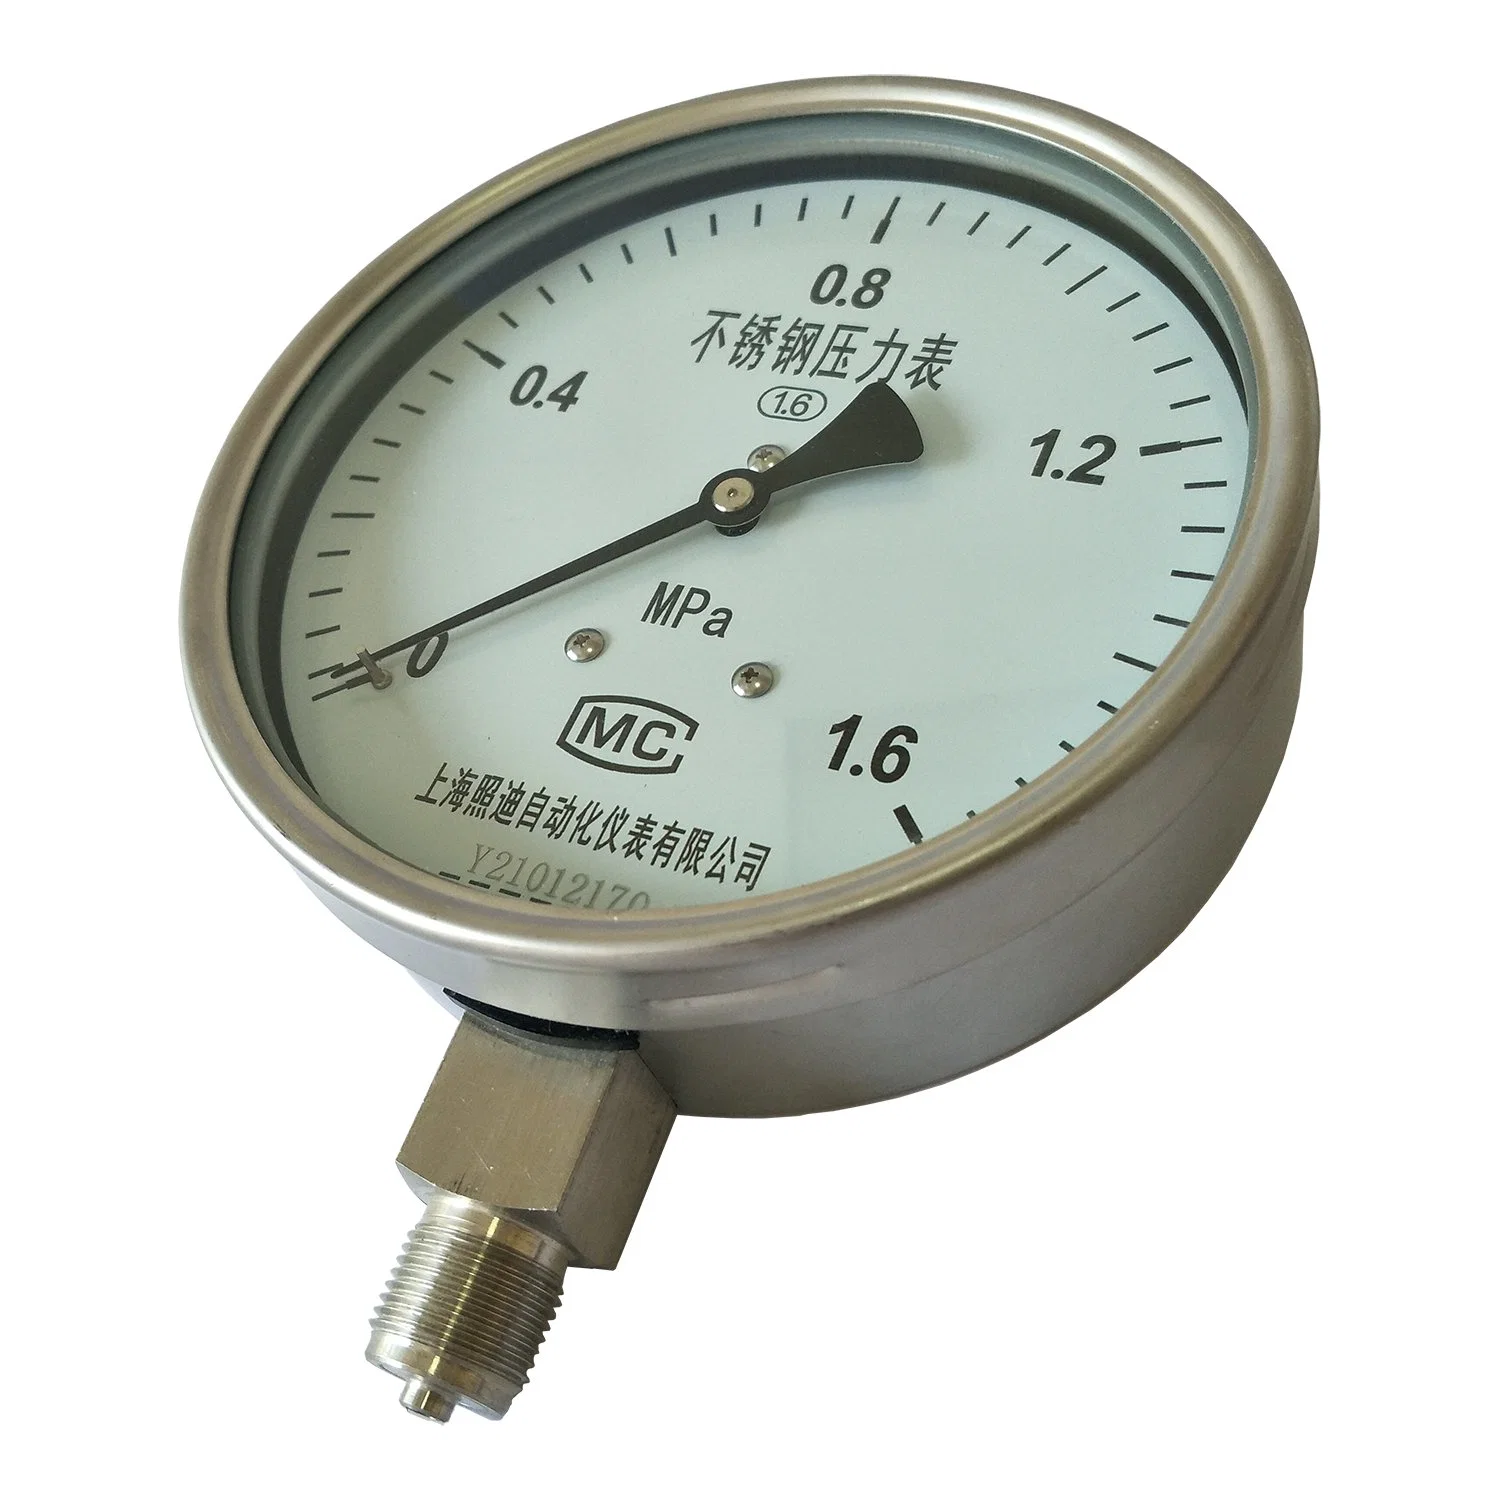 Fabricante puntero indicación MPa Psi Bar Acero Inoxidable tubo Bourdon Manómetro de presión de agua caliente